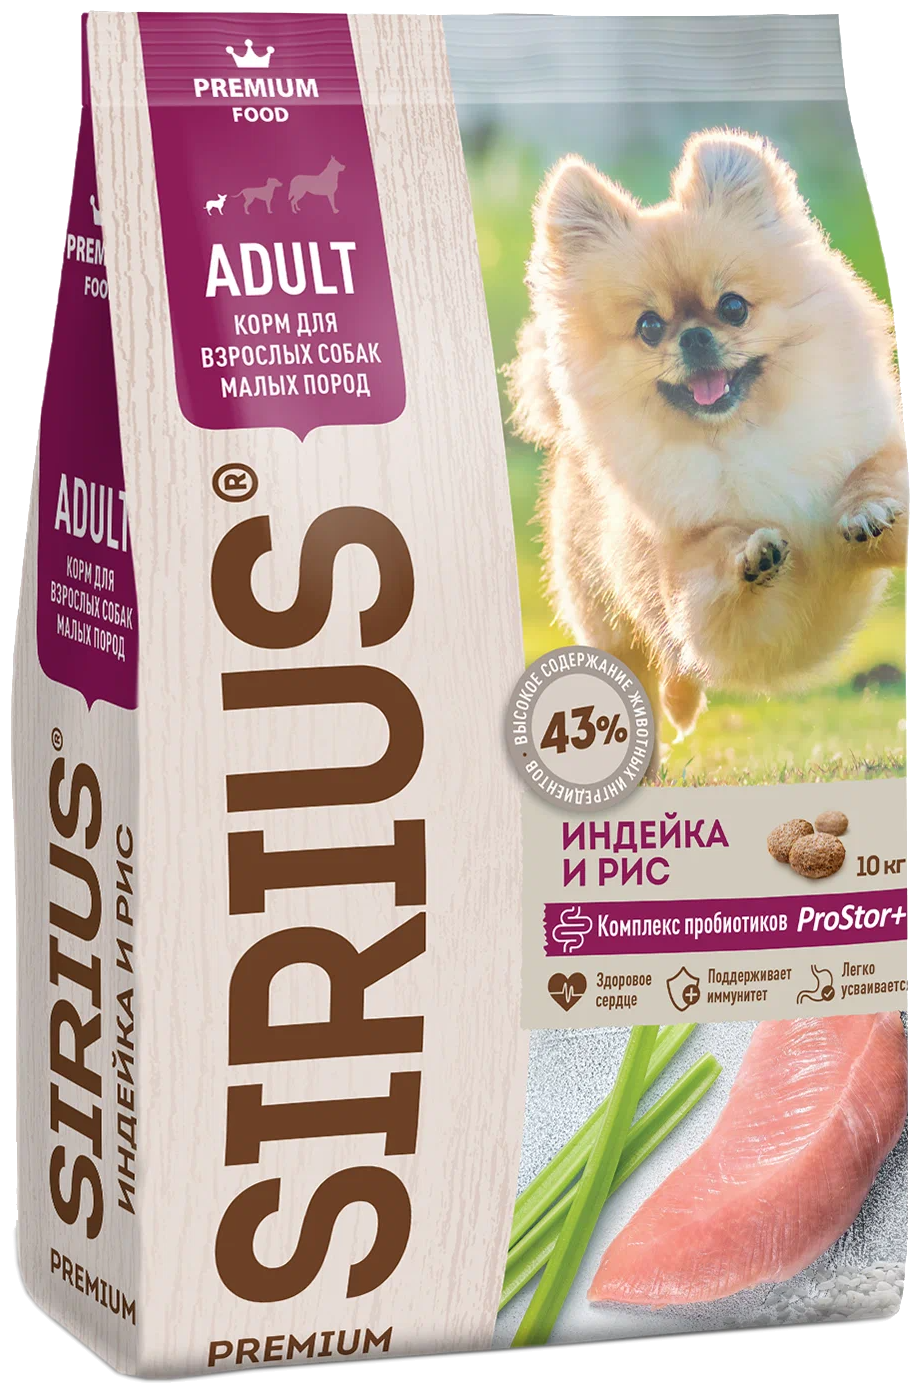 SIRIUS - Сириус сухой корм для взрослых собак мелких пород индейка и рис -  10кг. — купить в интернет-магазине по низкой цене на Яндекс Маркете